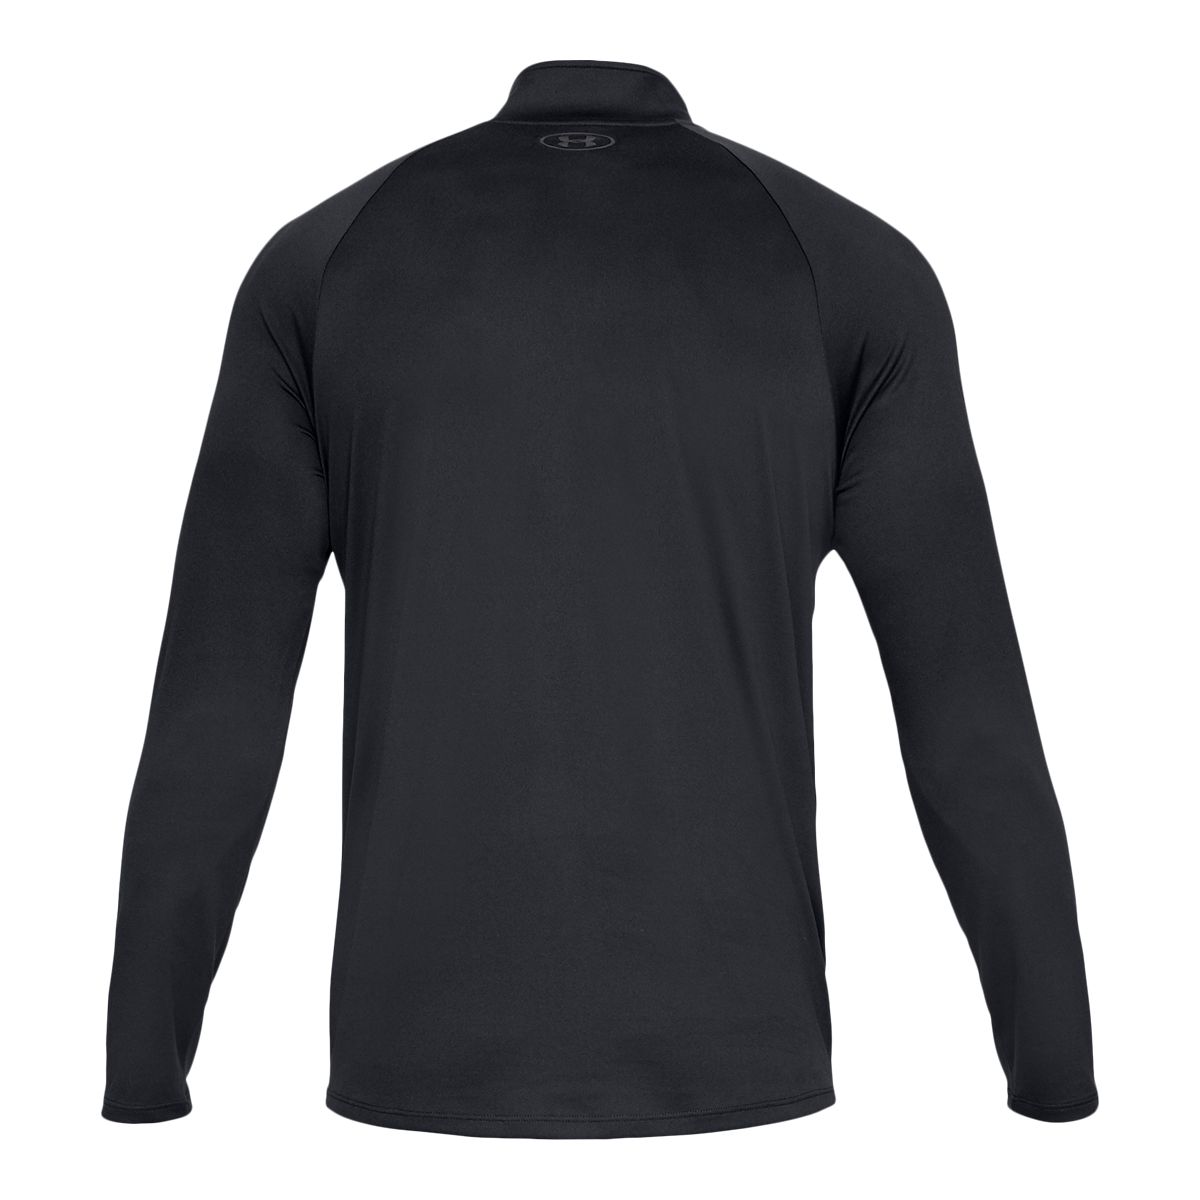 Under Armour Men's Team Tech Long Sleeve 1/4 Zip Shirt #1376844